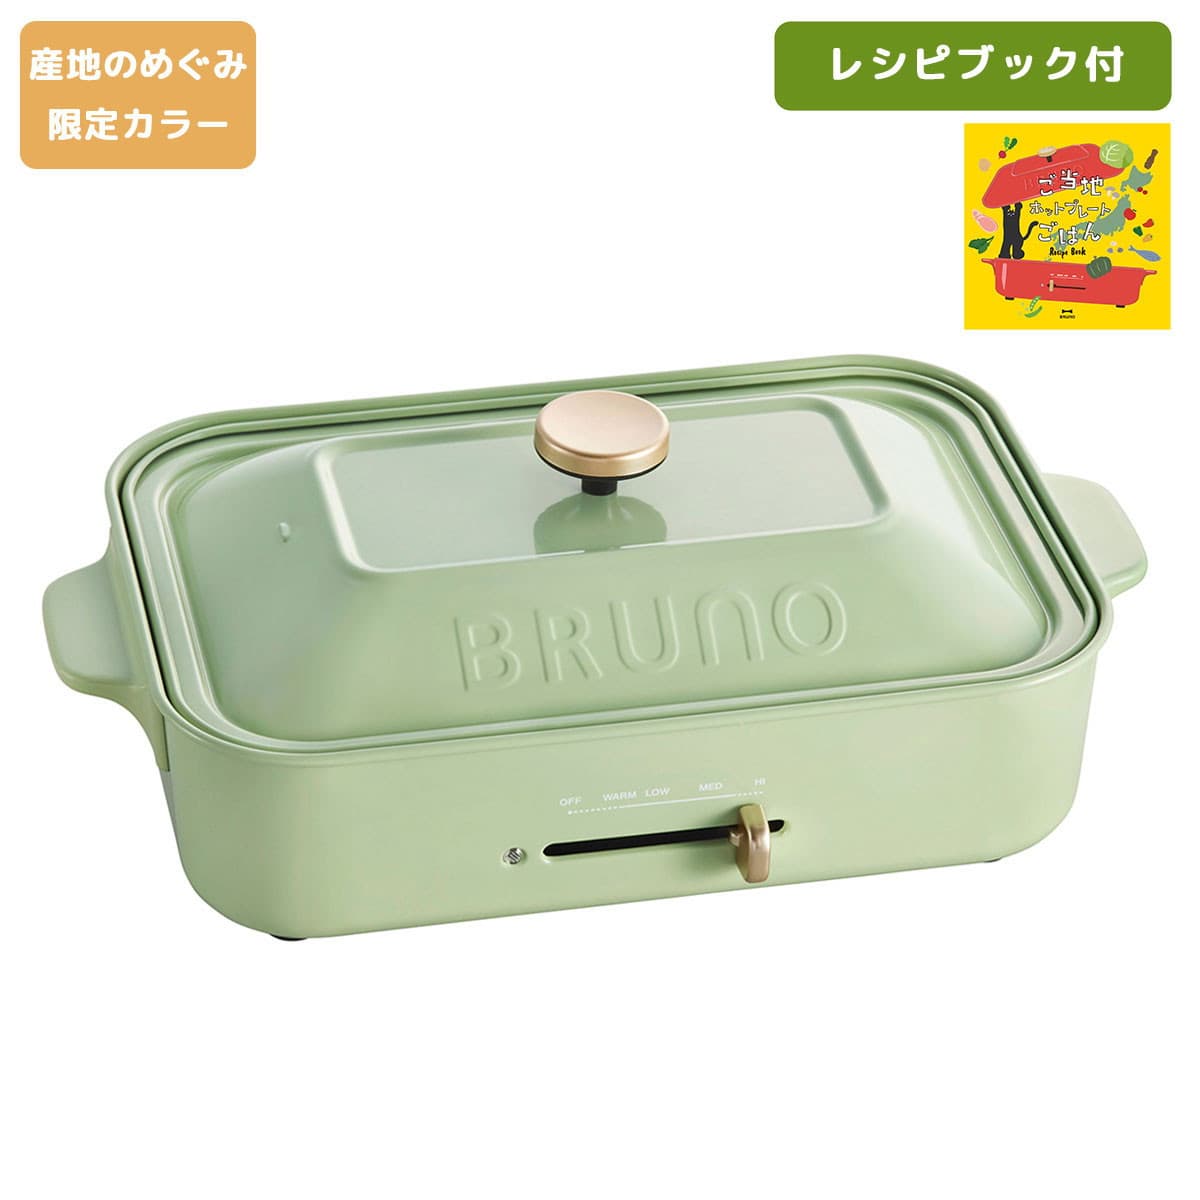 【正規品1年保証】BRUNO ブルーノ コンパクトホットプレート 限定カラー BOE021